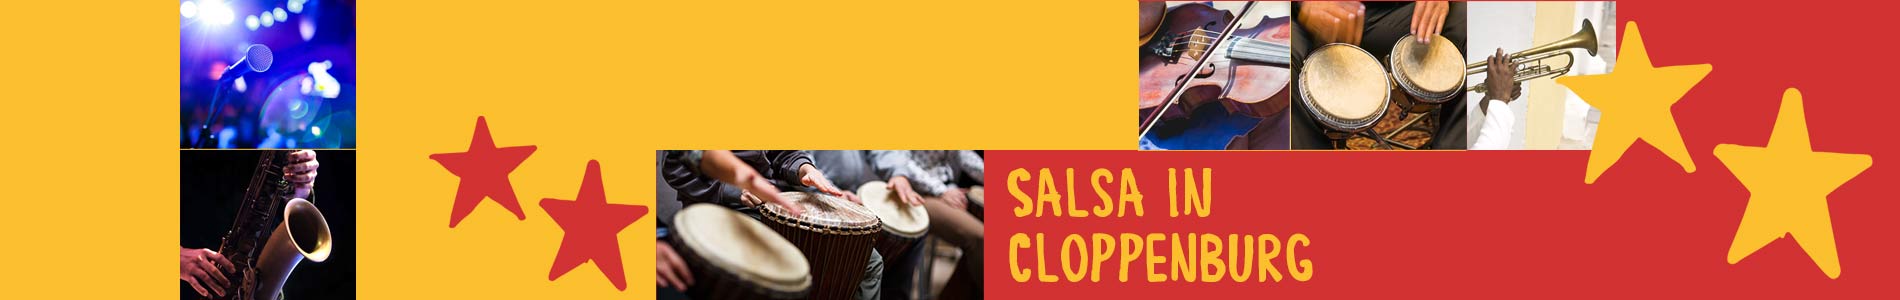 Salsa in Cloppenburg – Salsa lernen und tanzen, Tanzkurse, Partys, Veranstaltungen